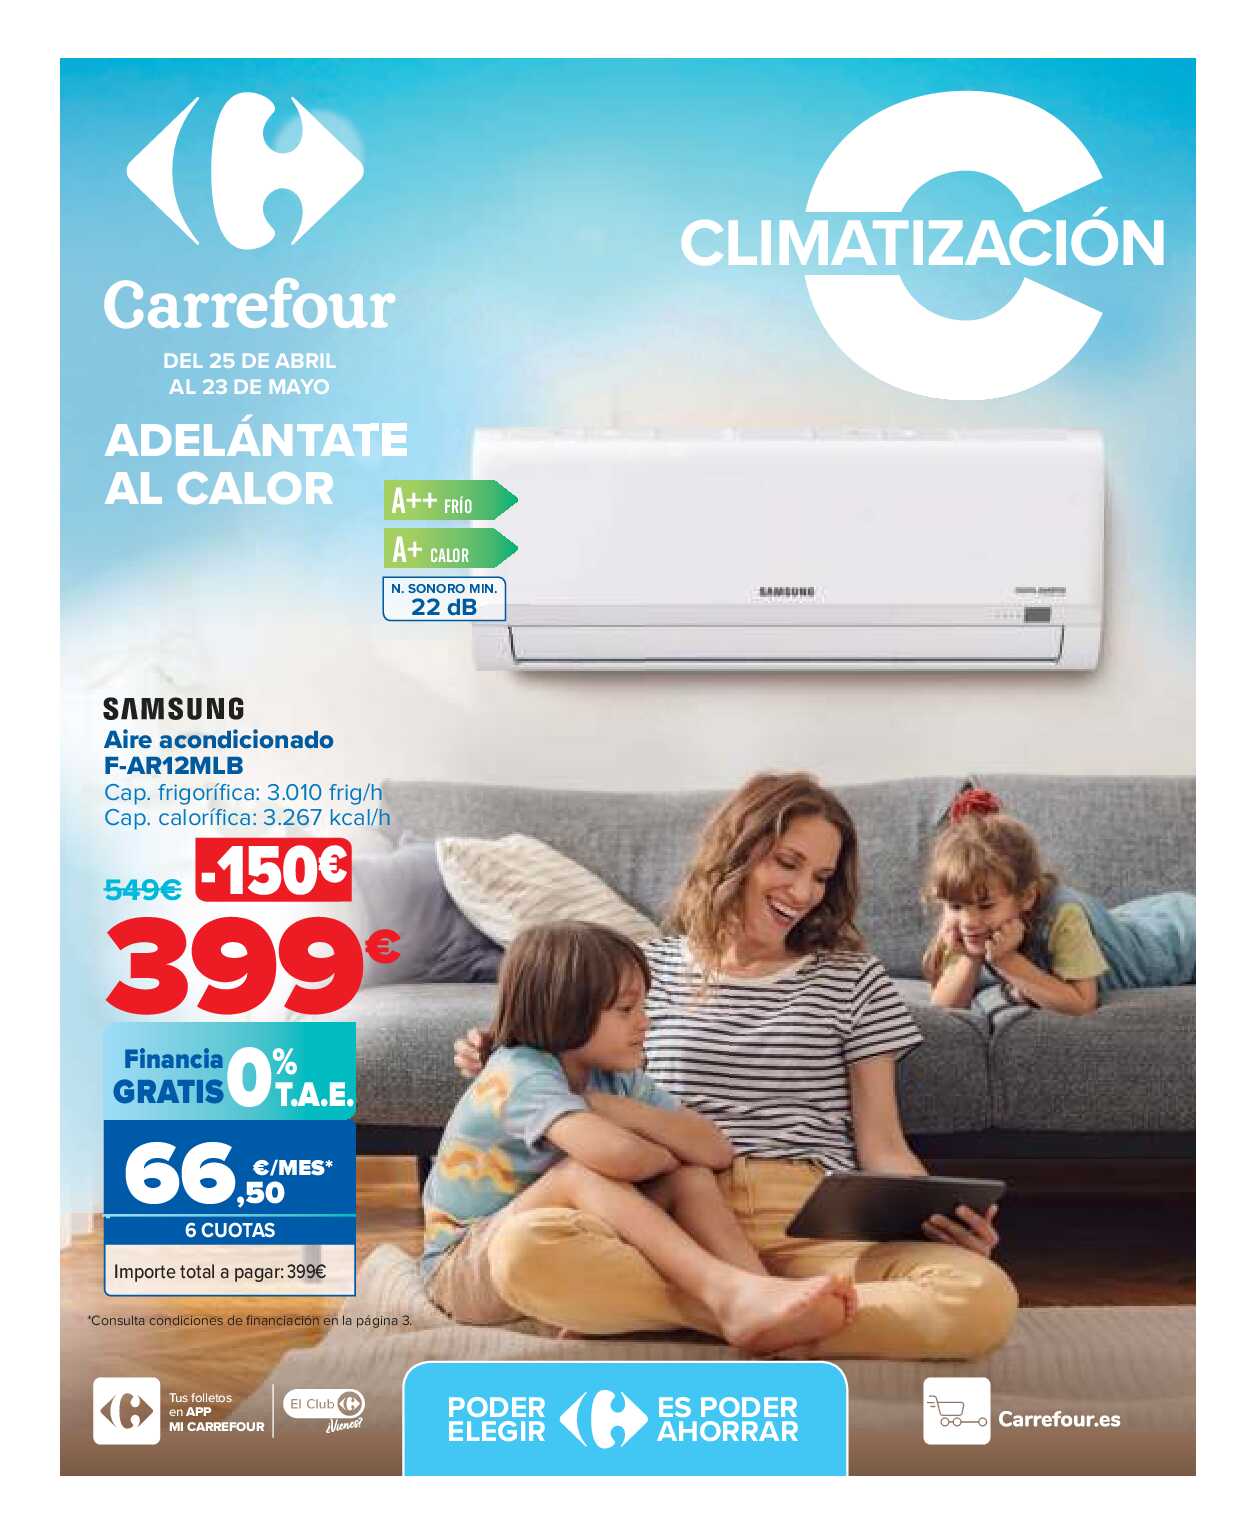 Climatización Carrefour. Página 01